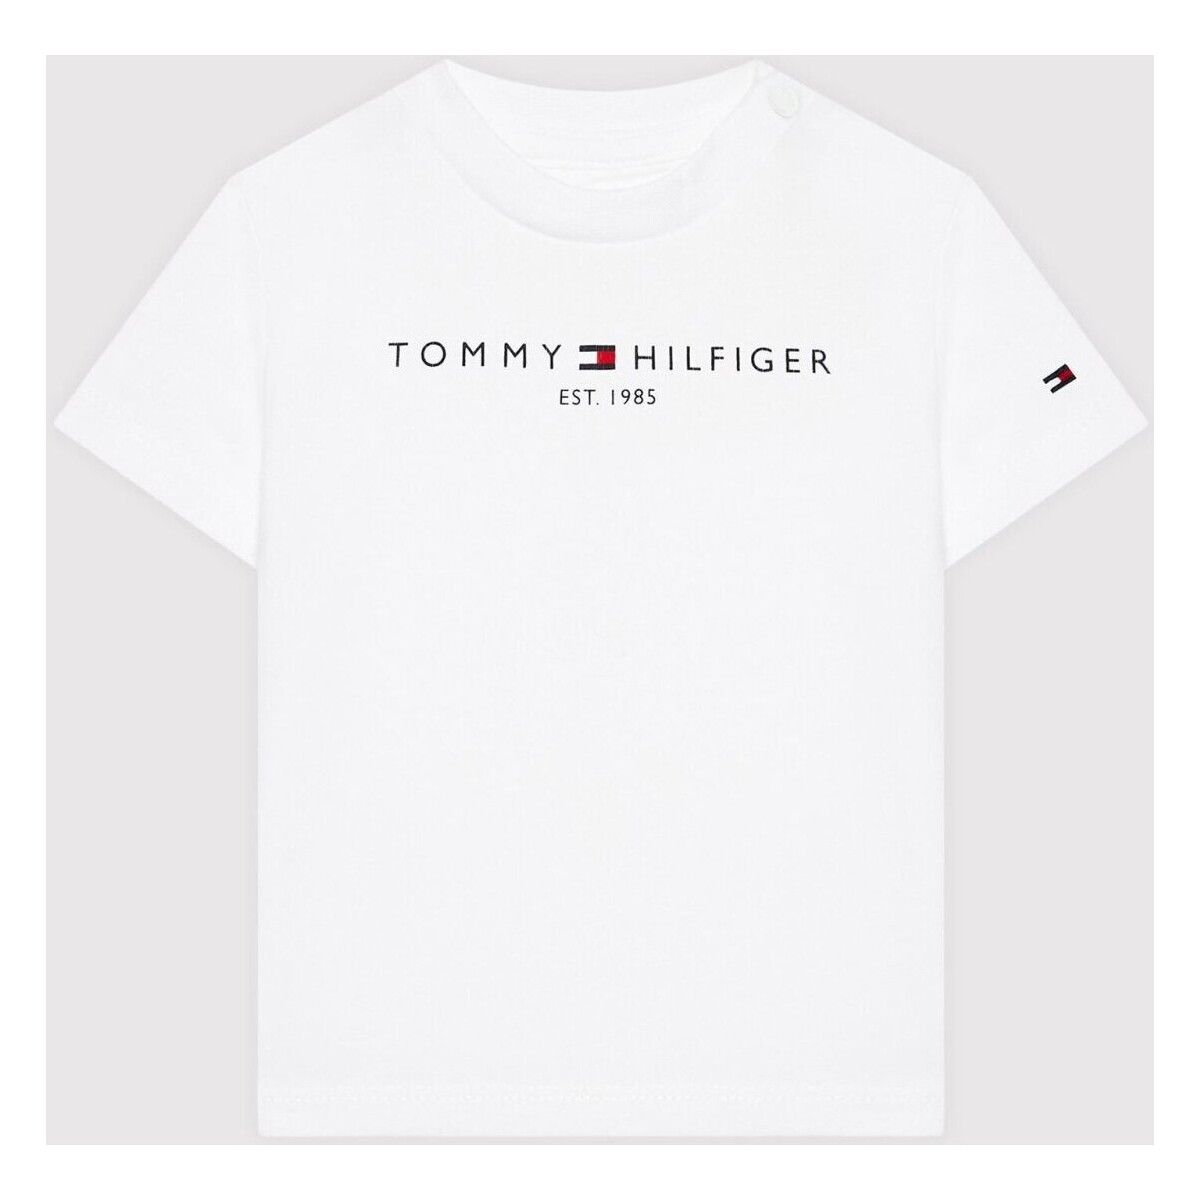 vaatteet Lapset Lyhythihainen t-paita Tommy Hilfiger KN0KN01487 Valkoinen